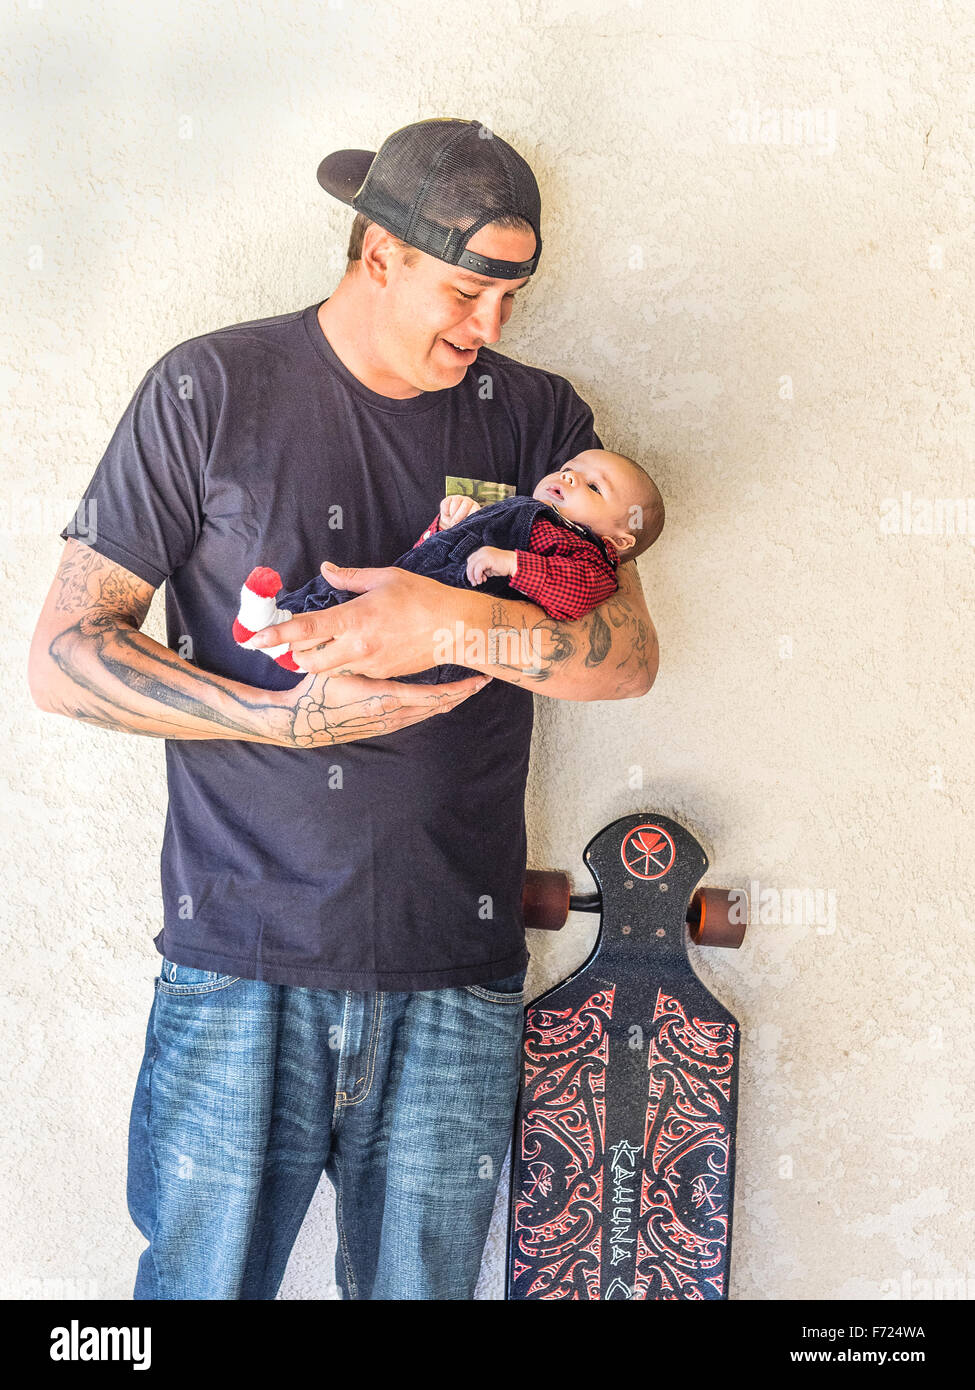 Skateboarding padre milenario con tatuajes 2 1/2 mes sosteniendo a su hijo y de pie junto al papá de la patineta. Foto de stock